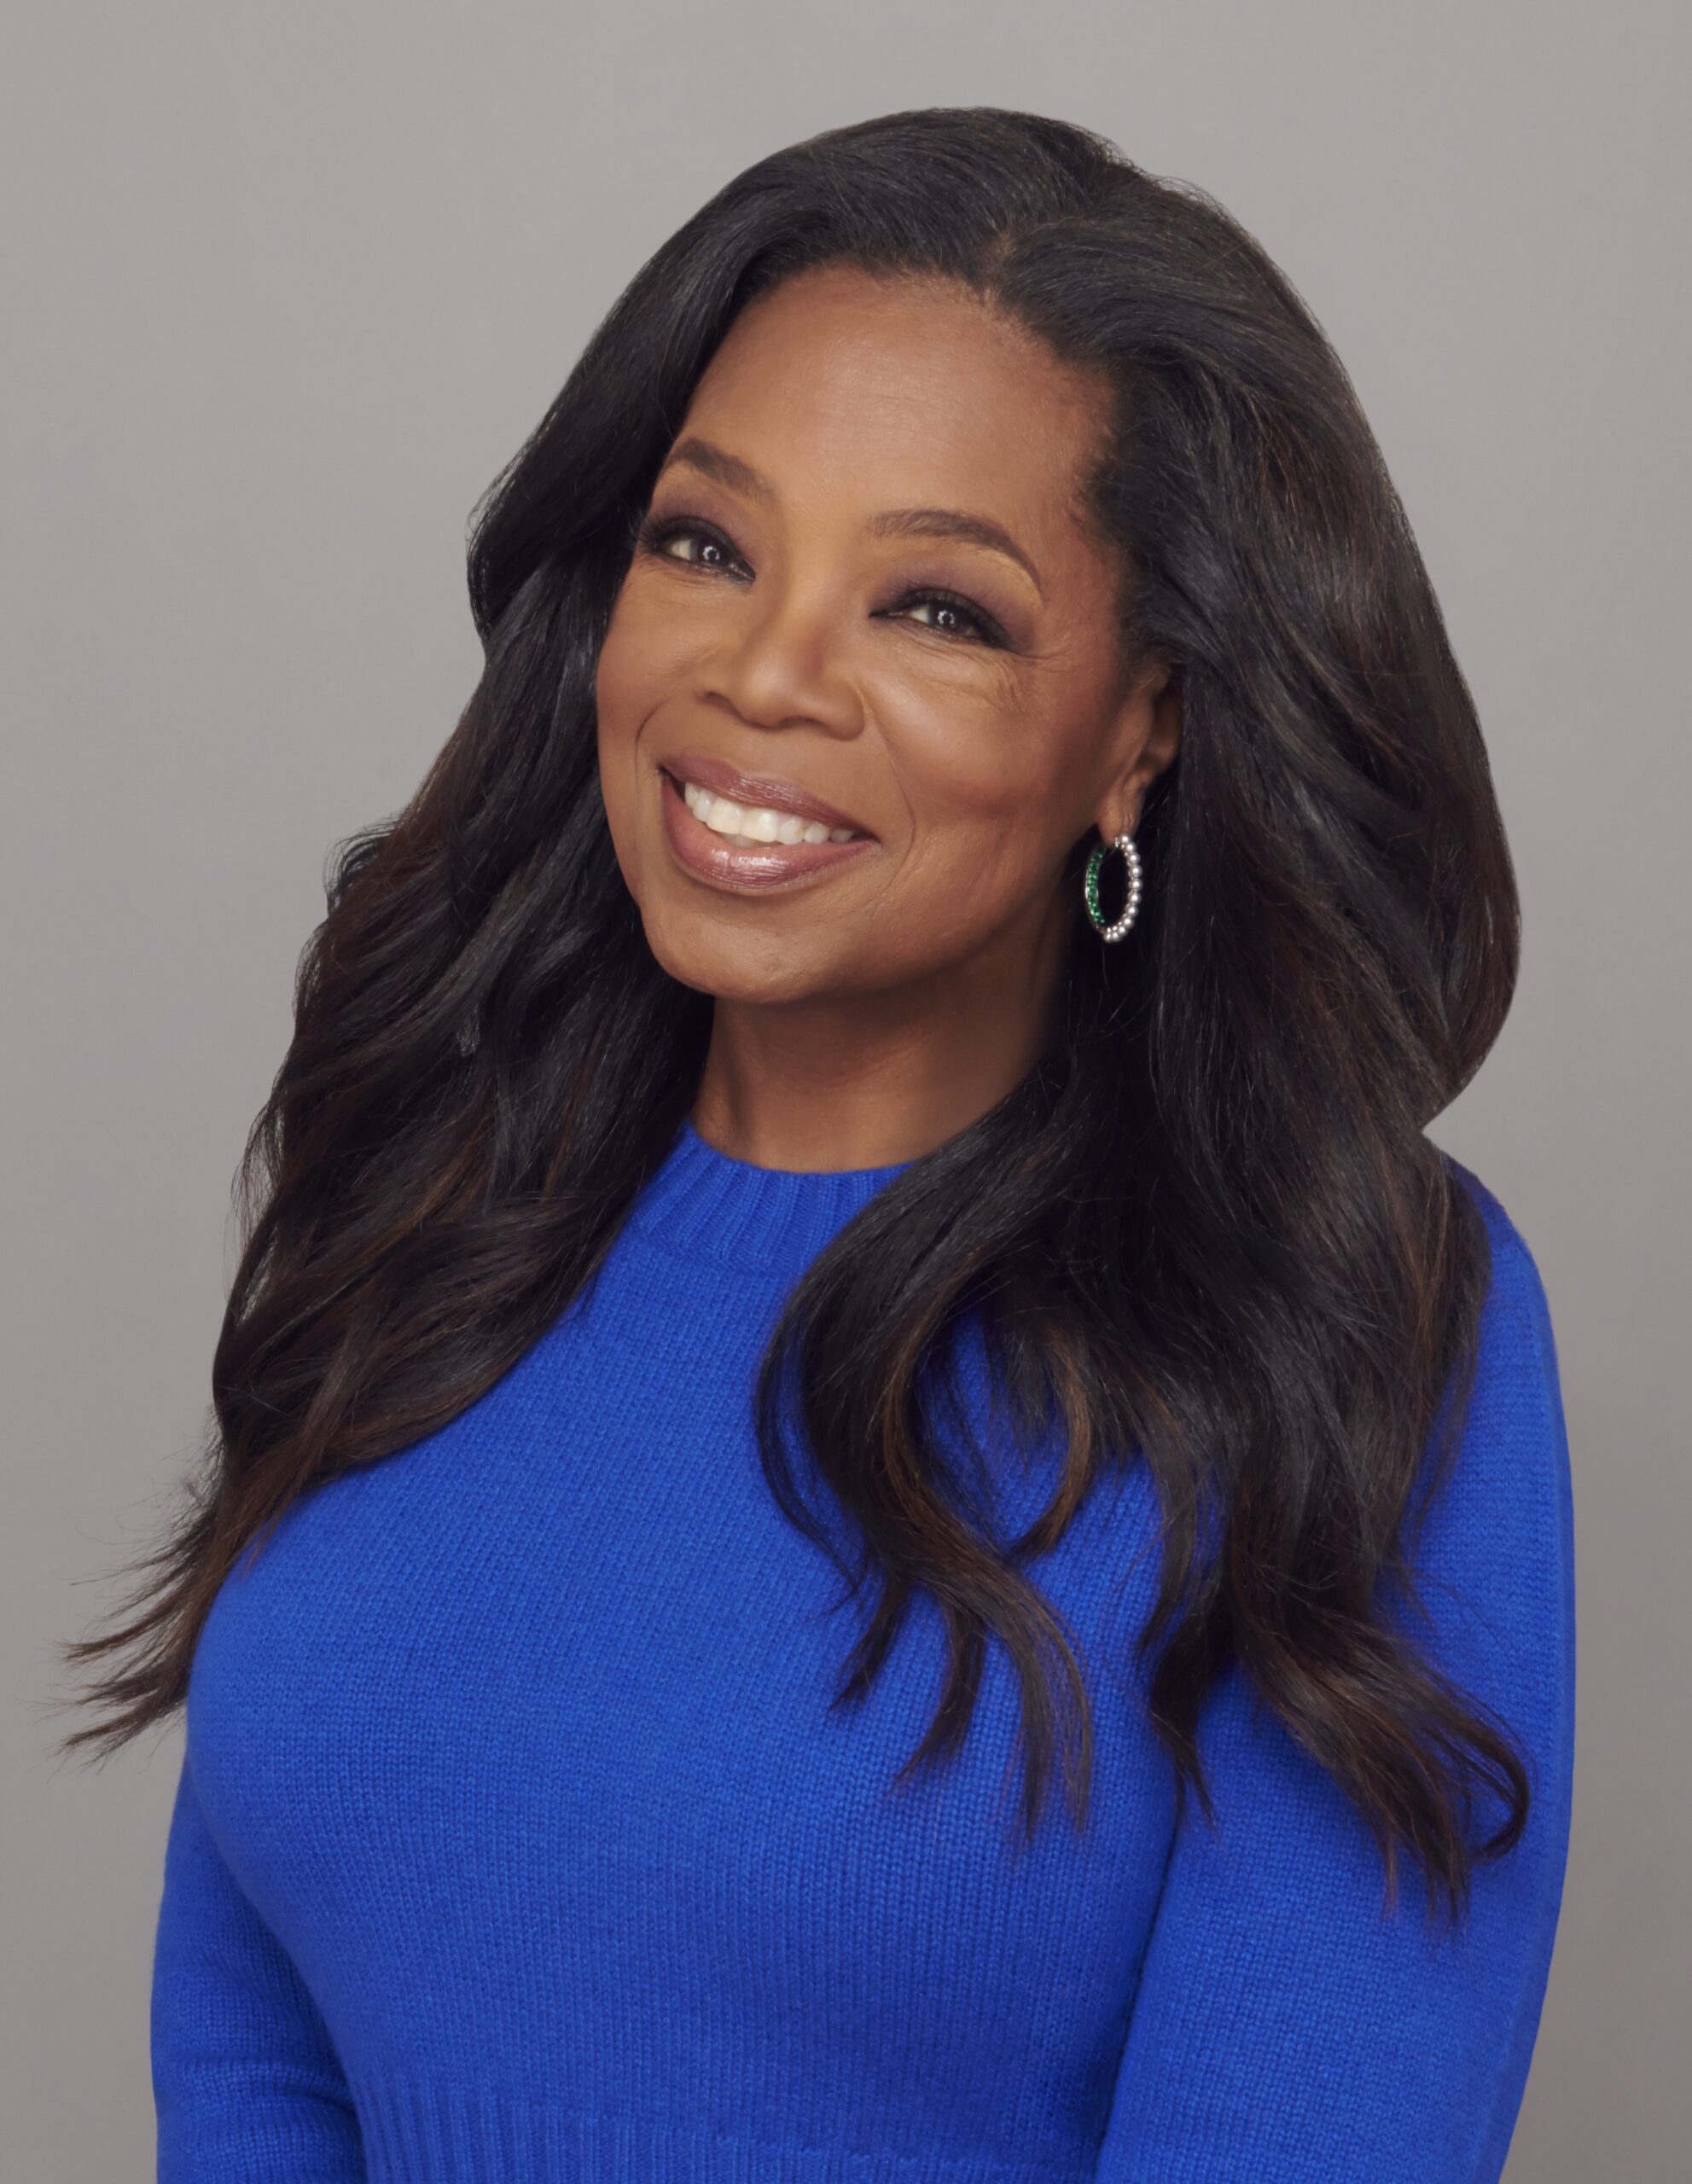 Oprah Winfrey participa de evento no Brasil em abril; ingressos estão à venda